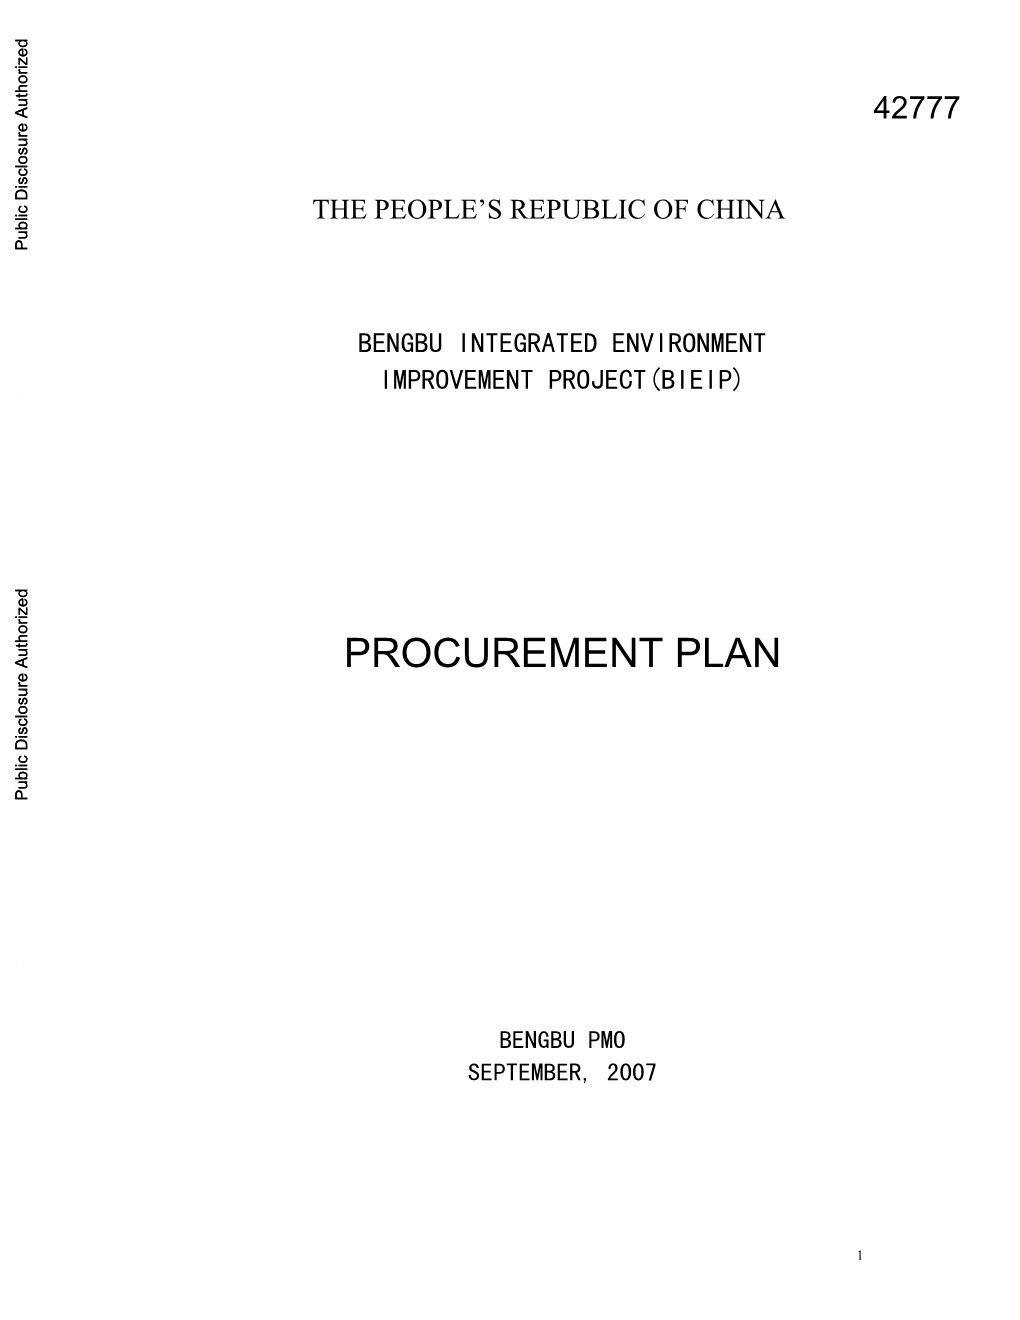 Annex of BIEIP Procurement Plan